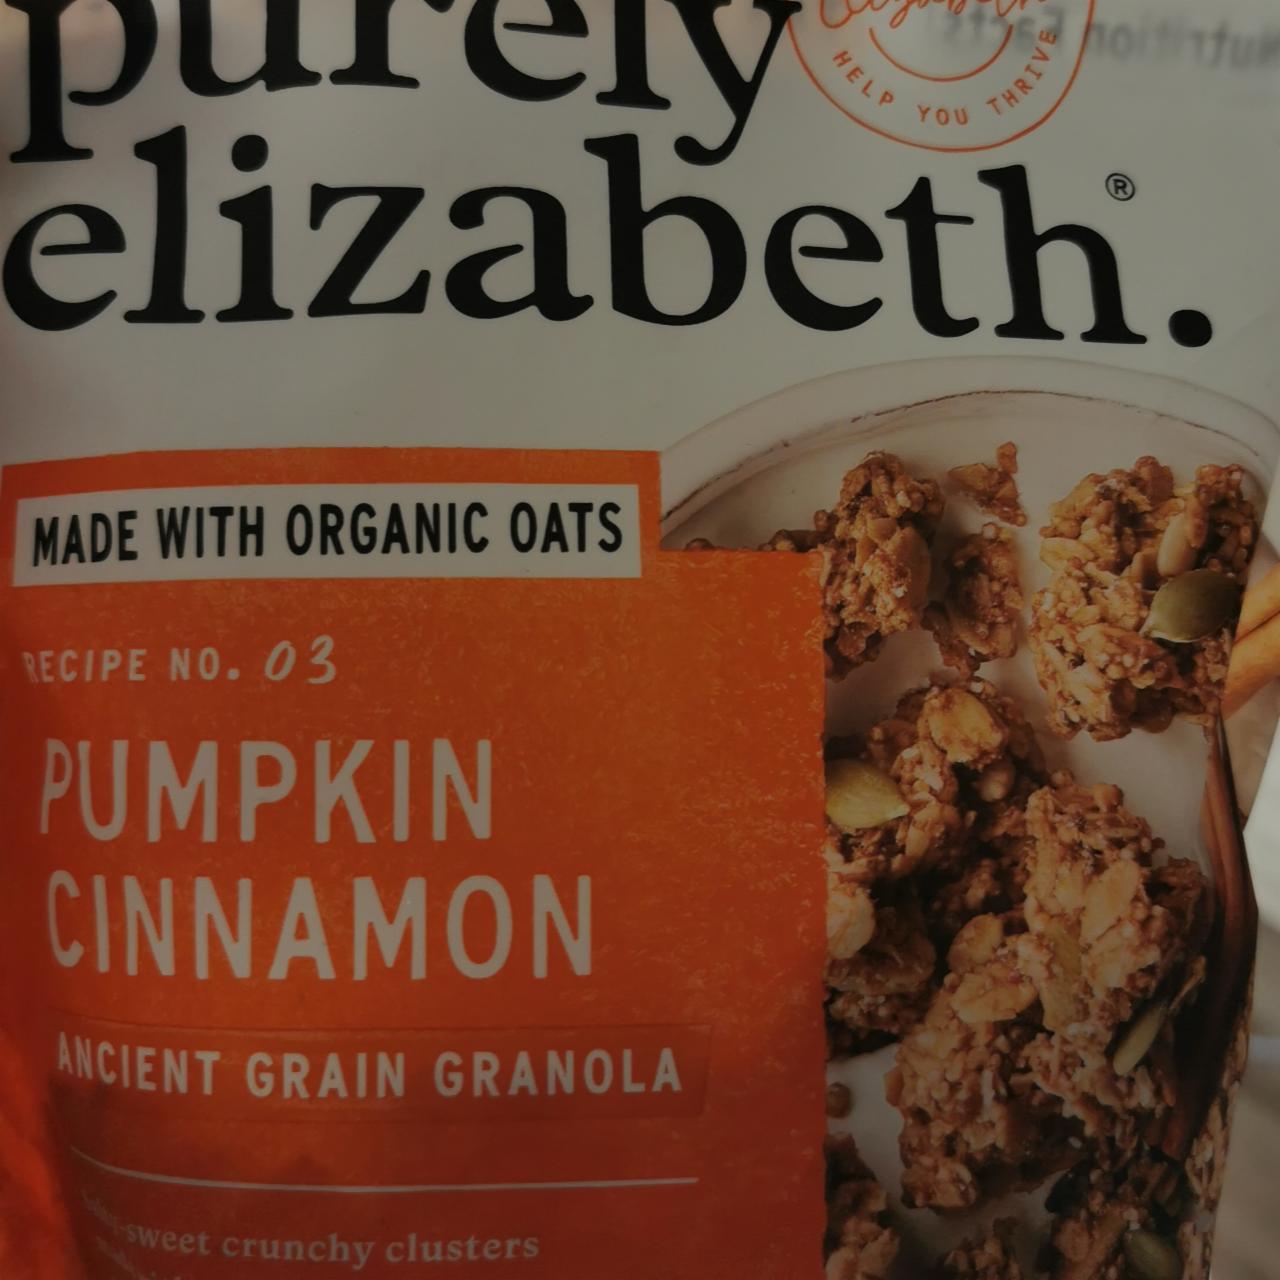 Fotografie - Pumpkin Cinnamon Ancient Grain Granola Purely Elizabeth.